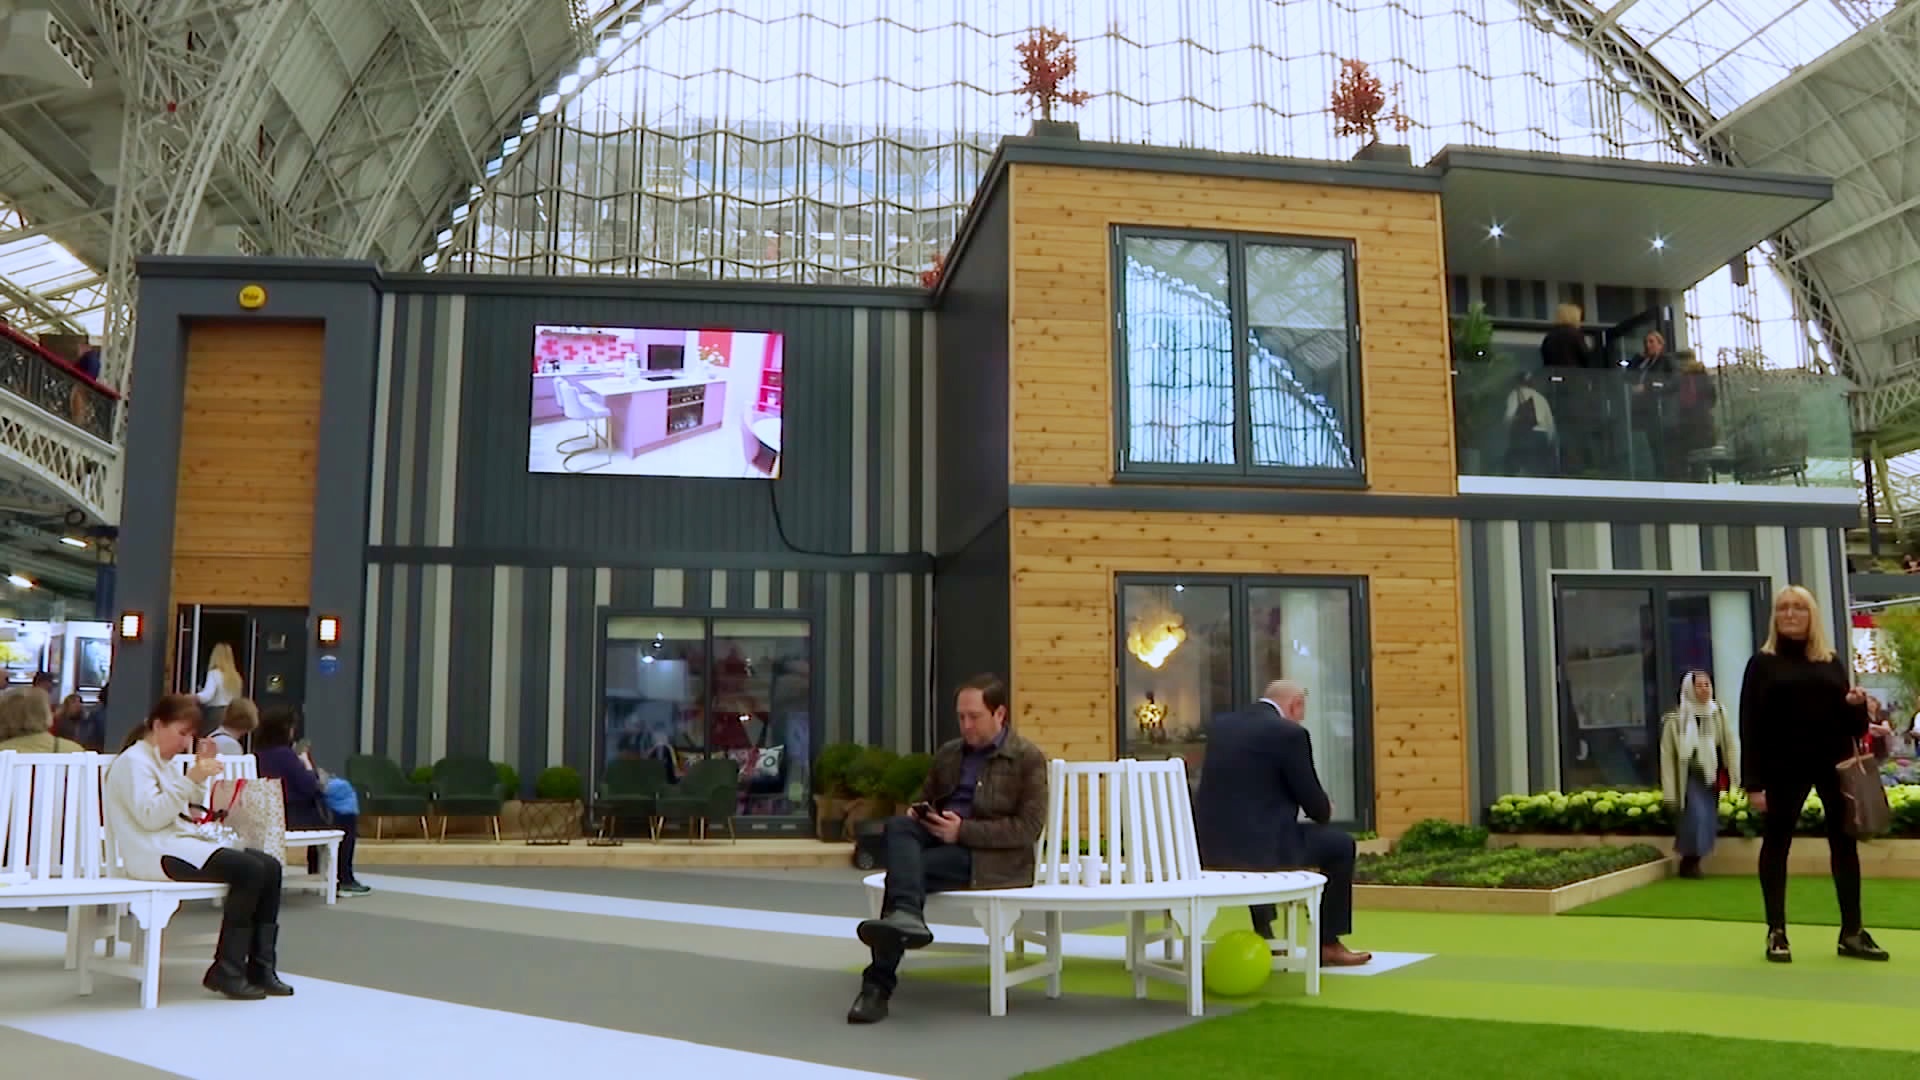 Выставка «Идеальный дом»: технологии для жизни и дизайны интерьера представили в Лондоне